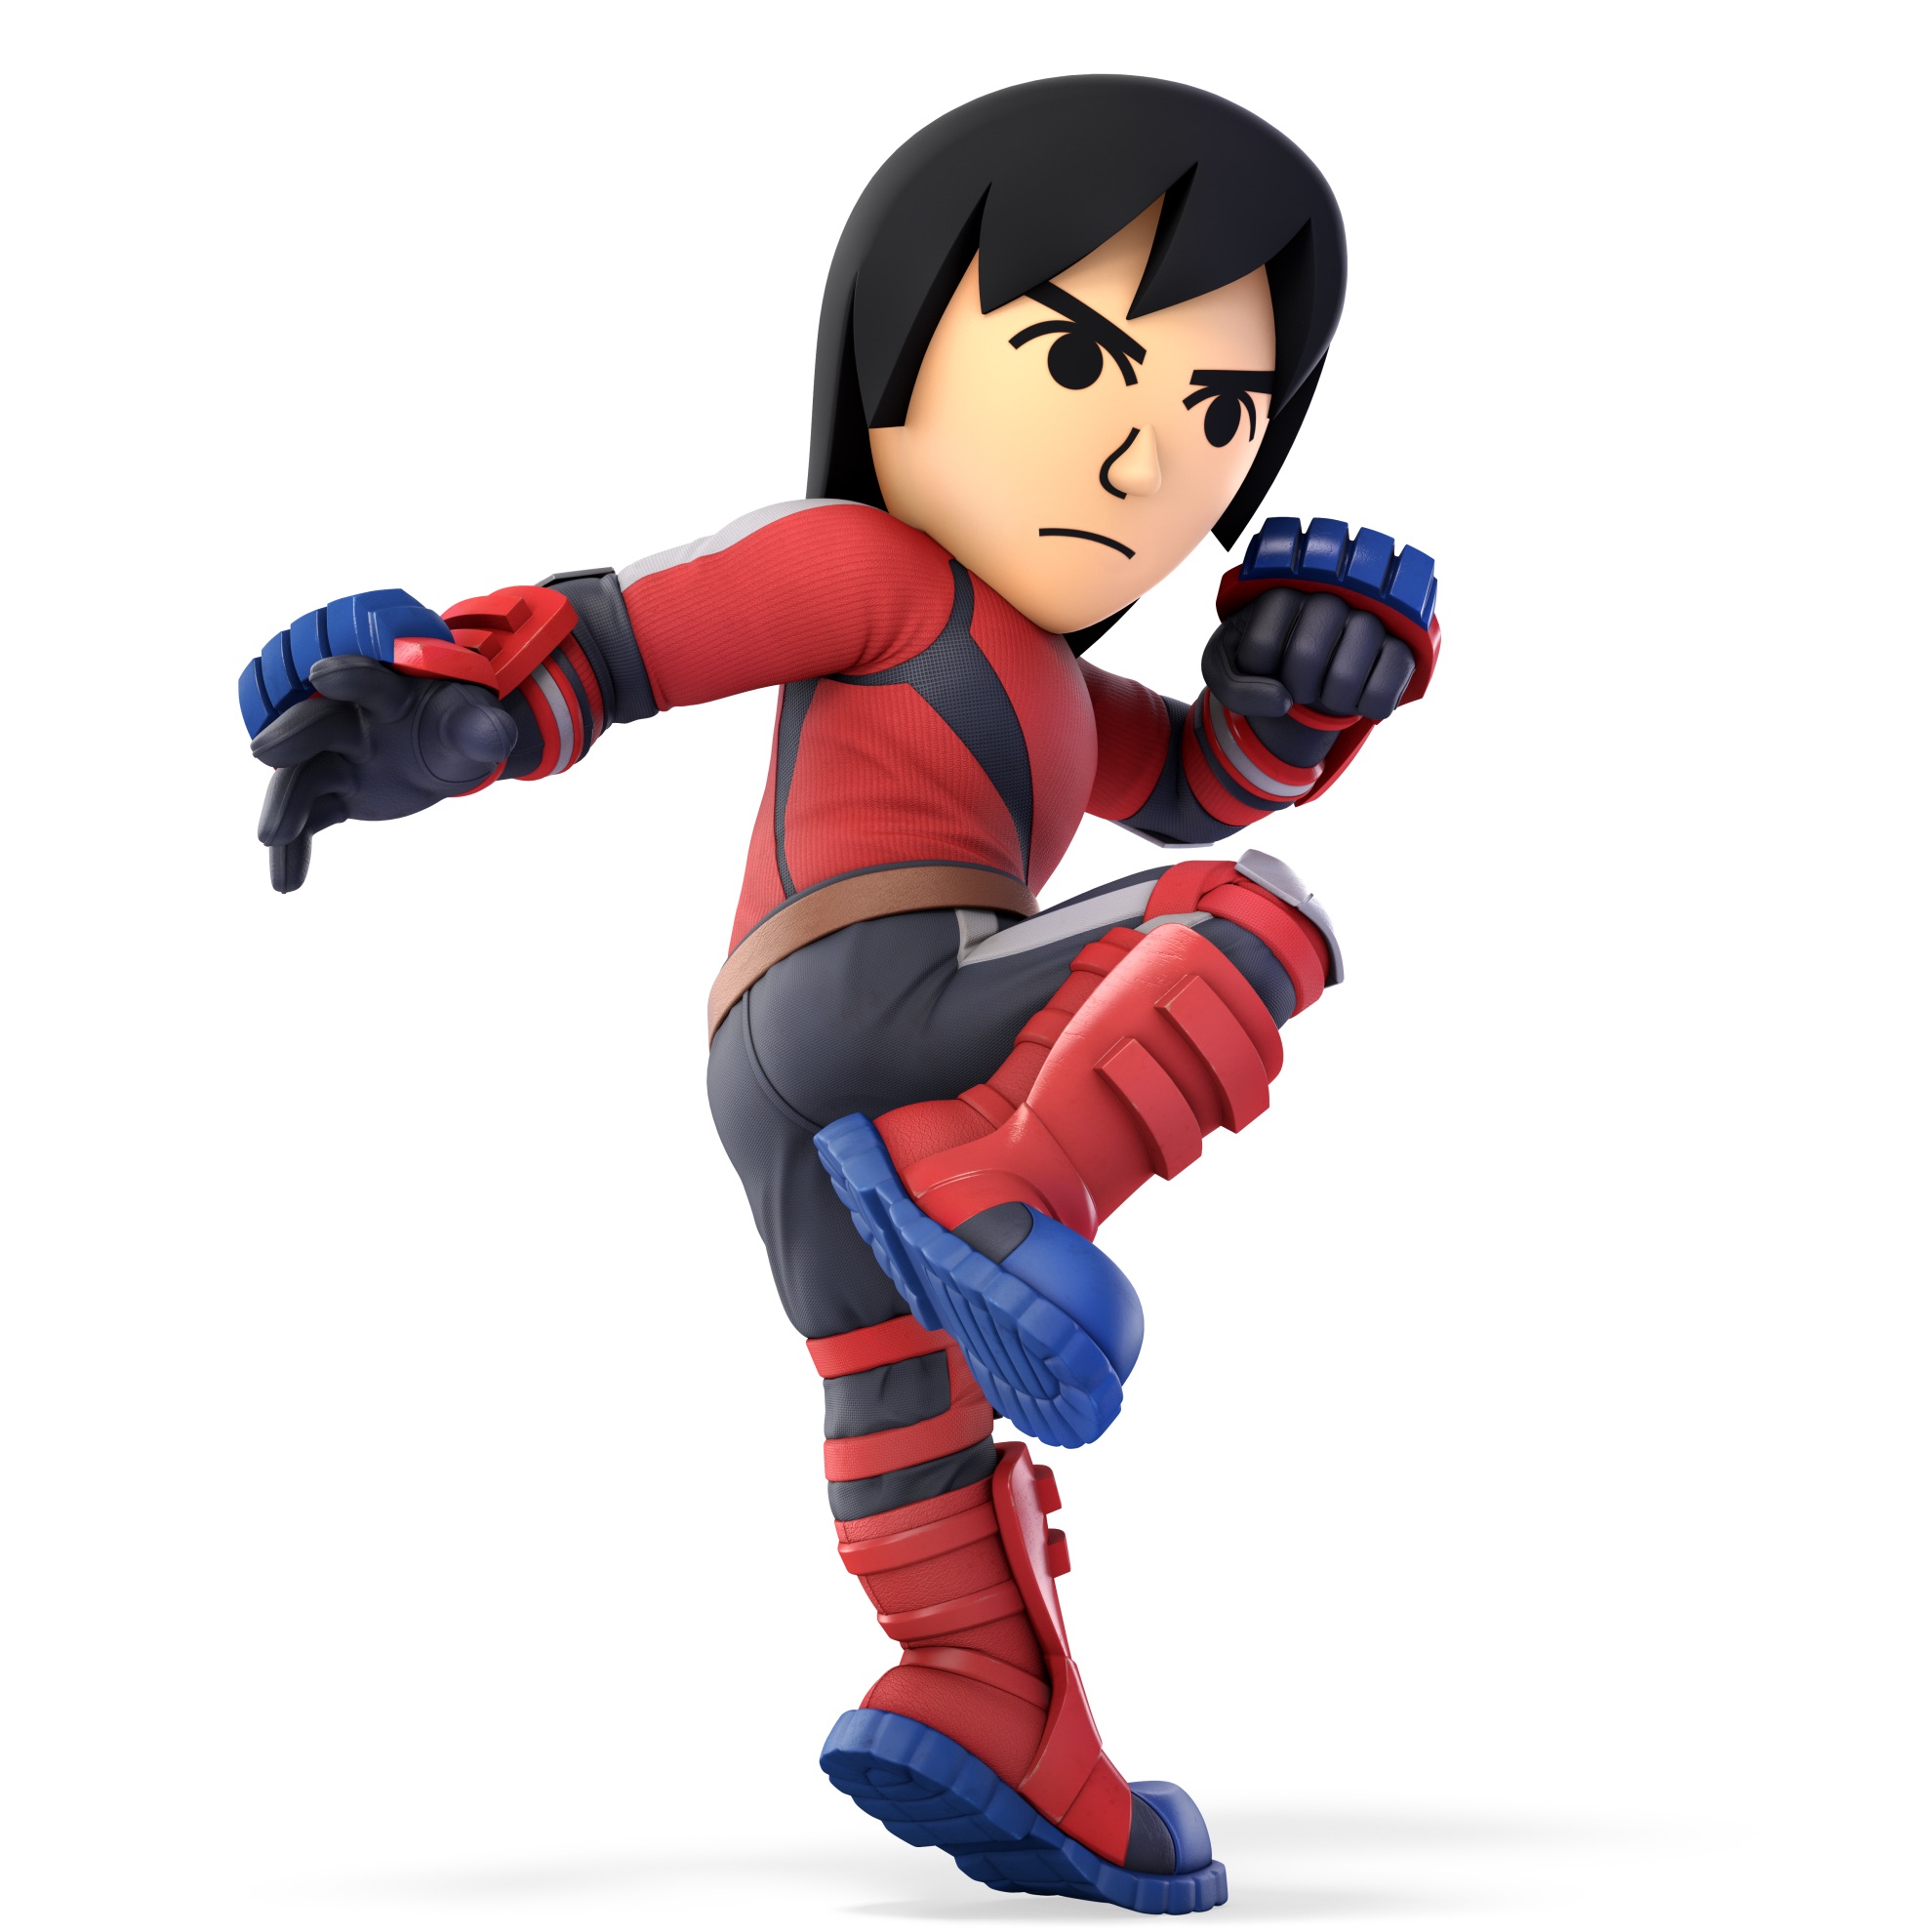 Mii Brawler Super Smash Bros. Ultimate Character Render